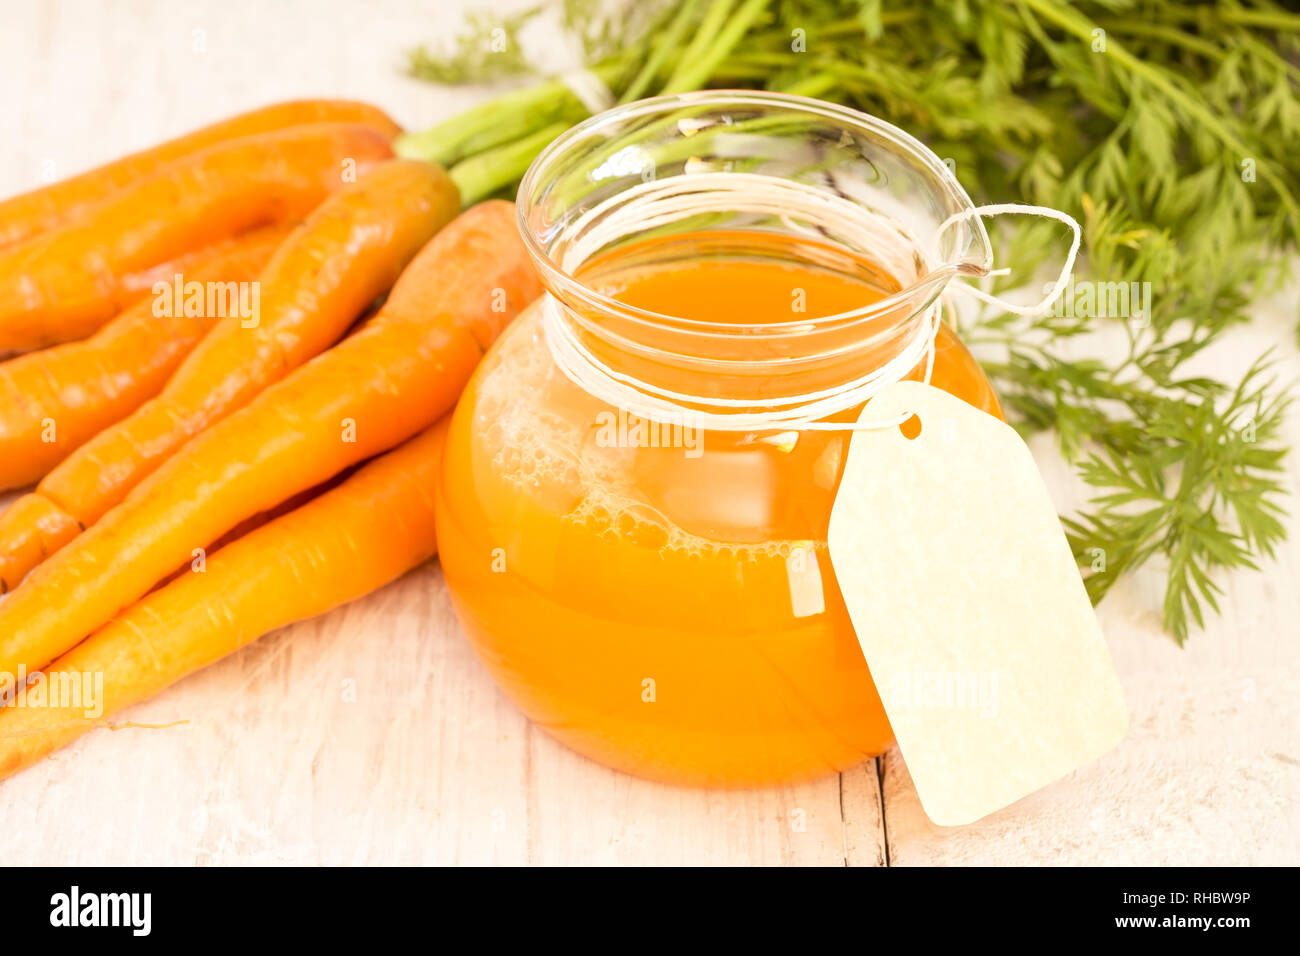 Le jus de carotte frais dans un bocal en verre avec l'étiquette vierge Banque D'Images